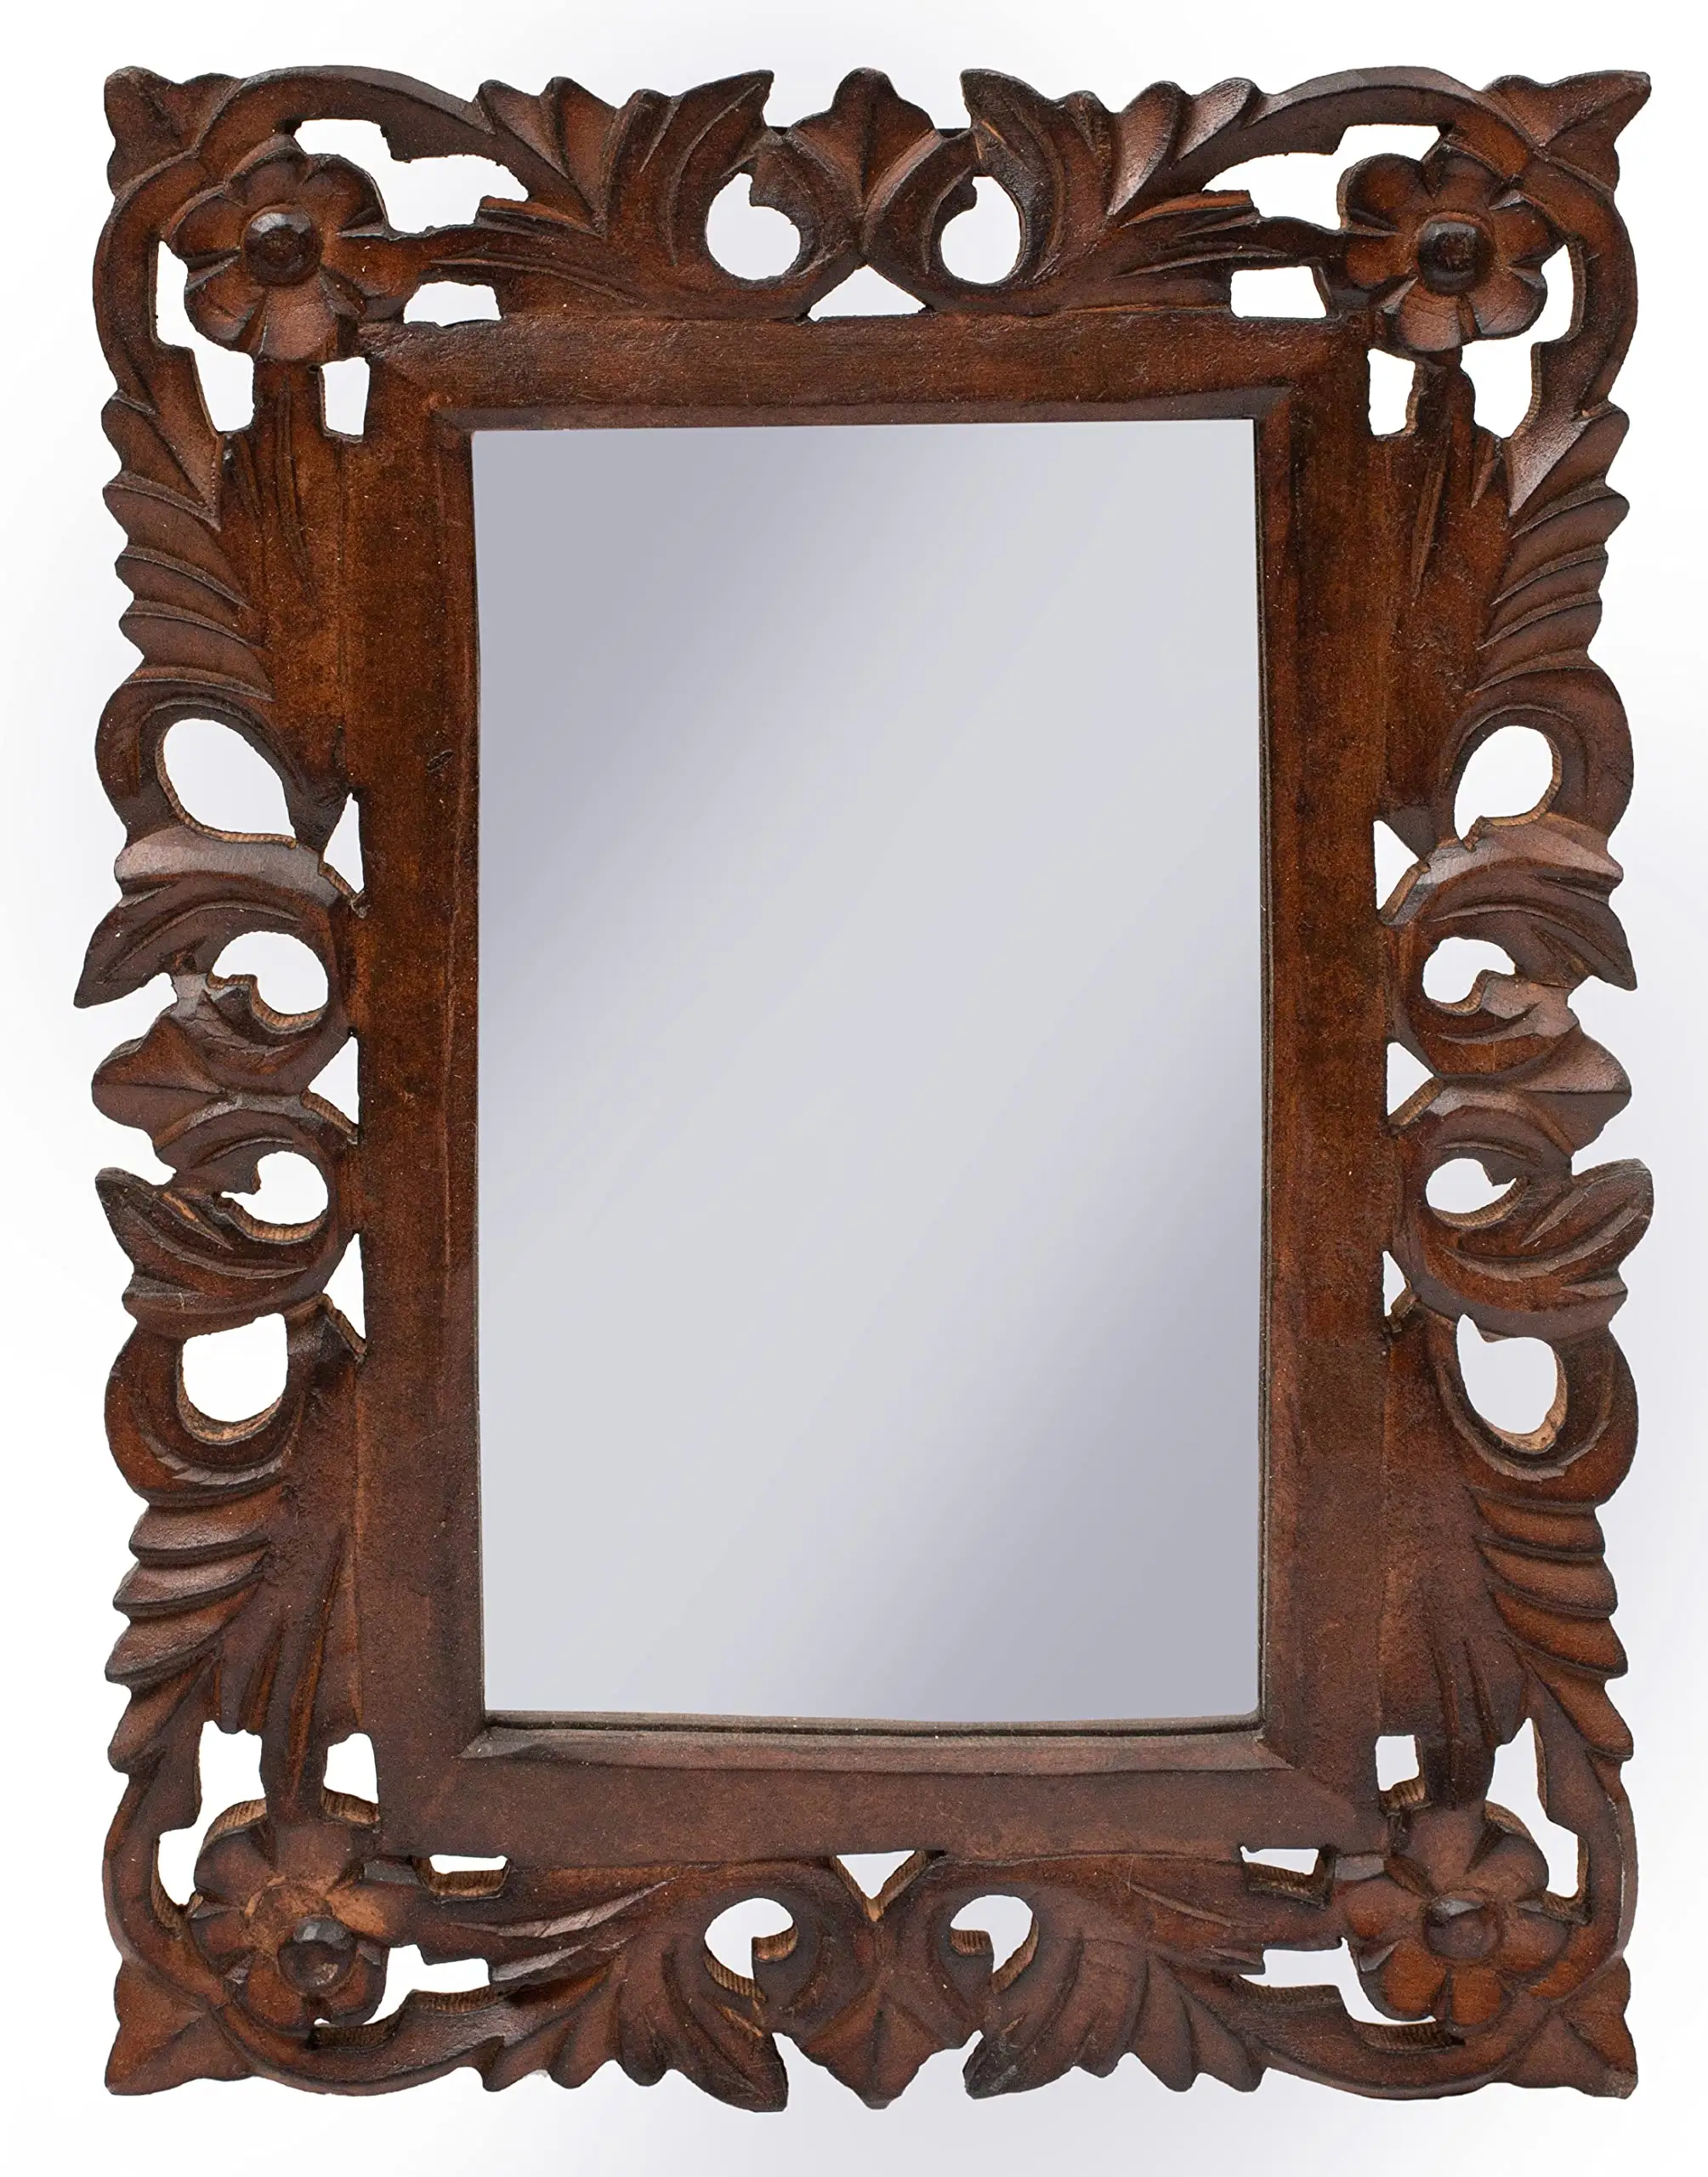 Focal retangular parede espelho, madeira moldura decorativo parede espelho, quinta espelho